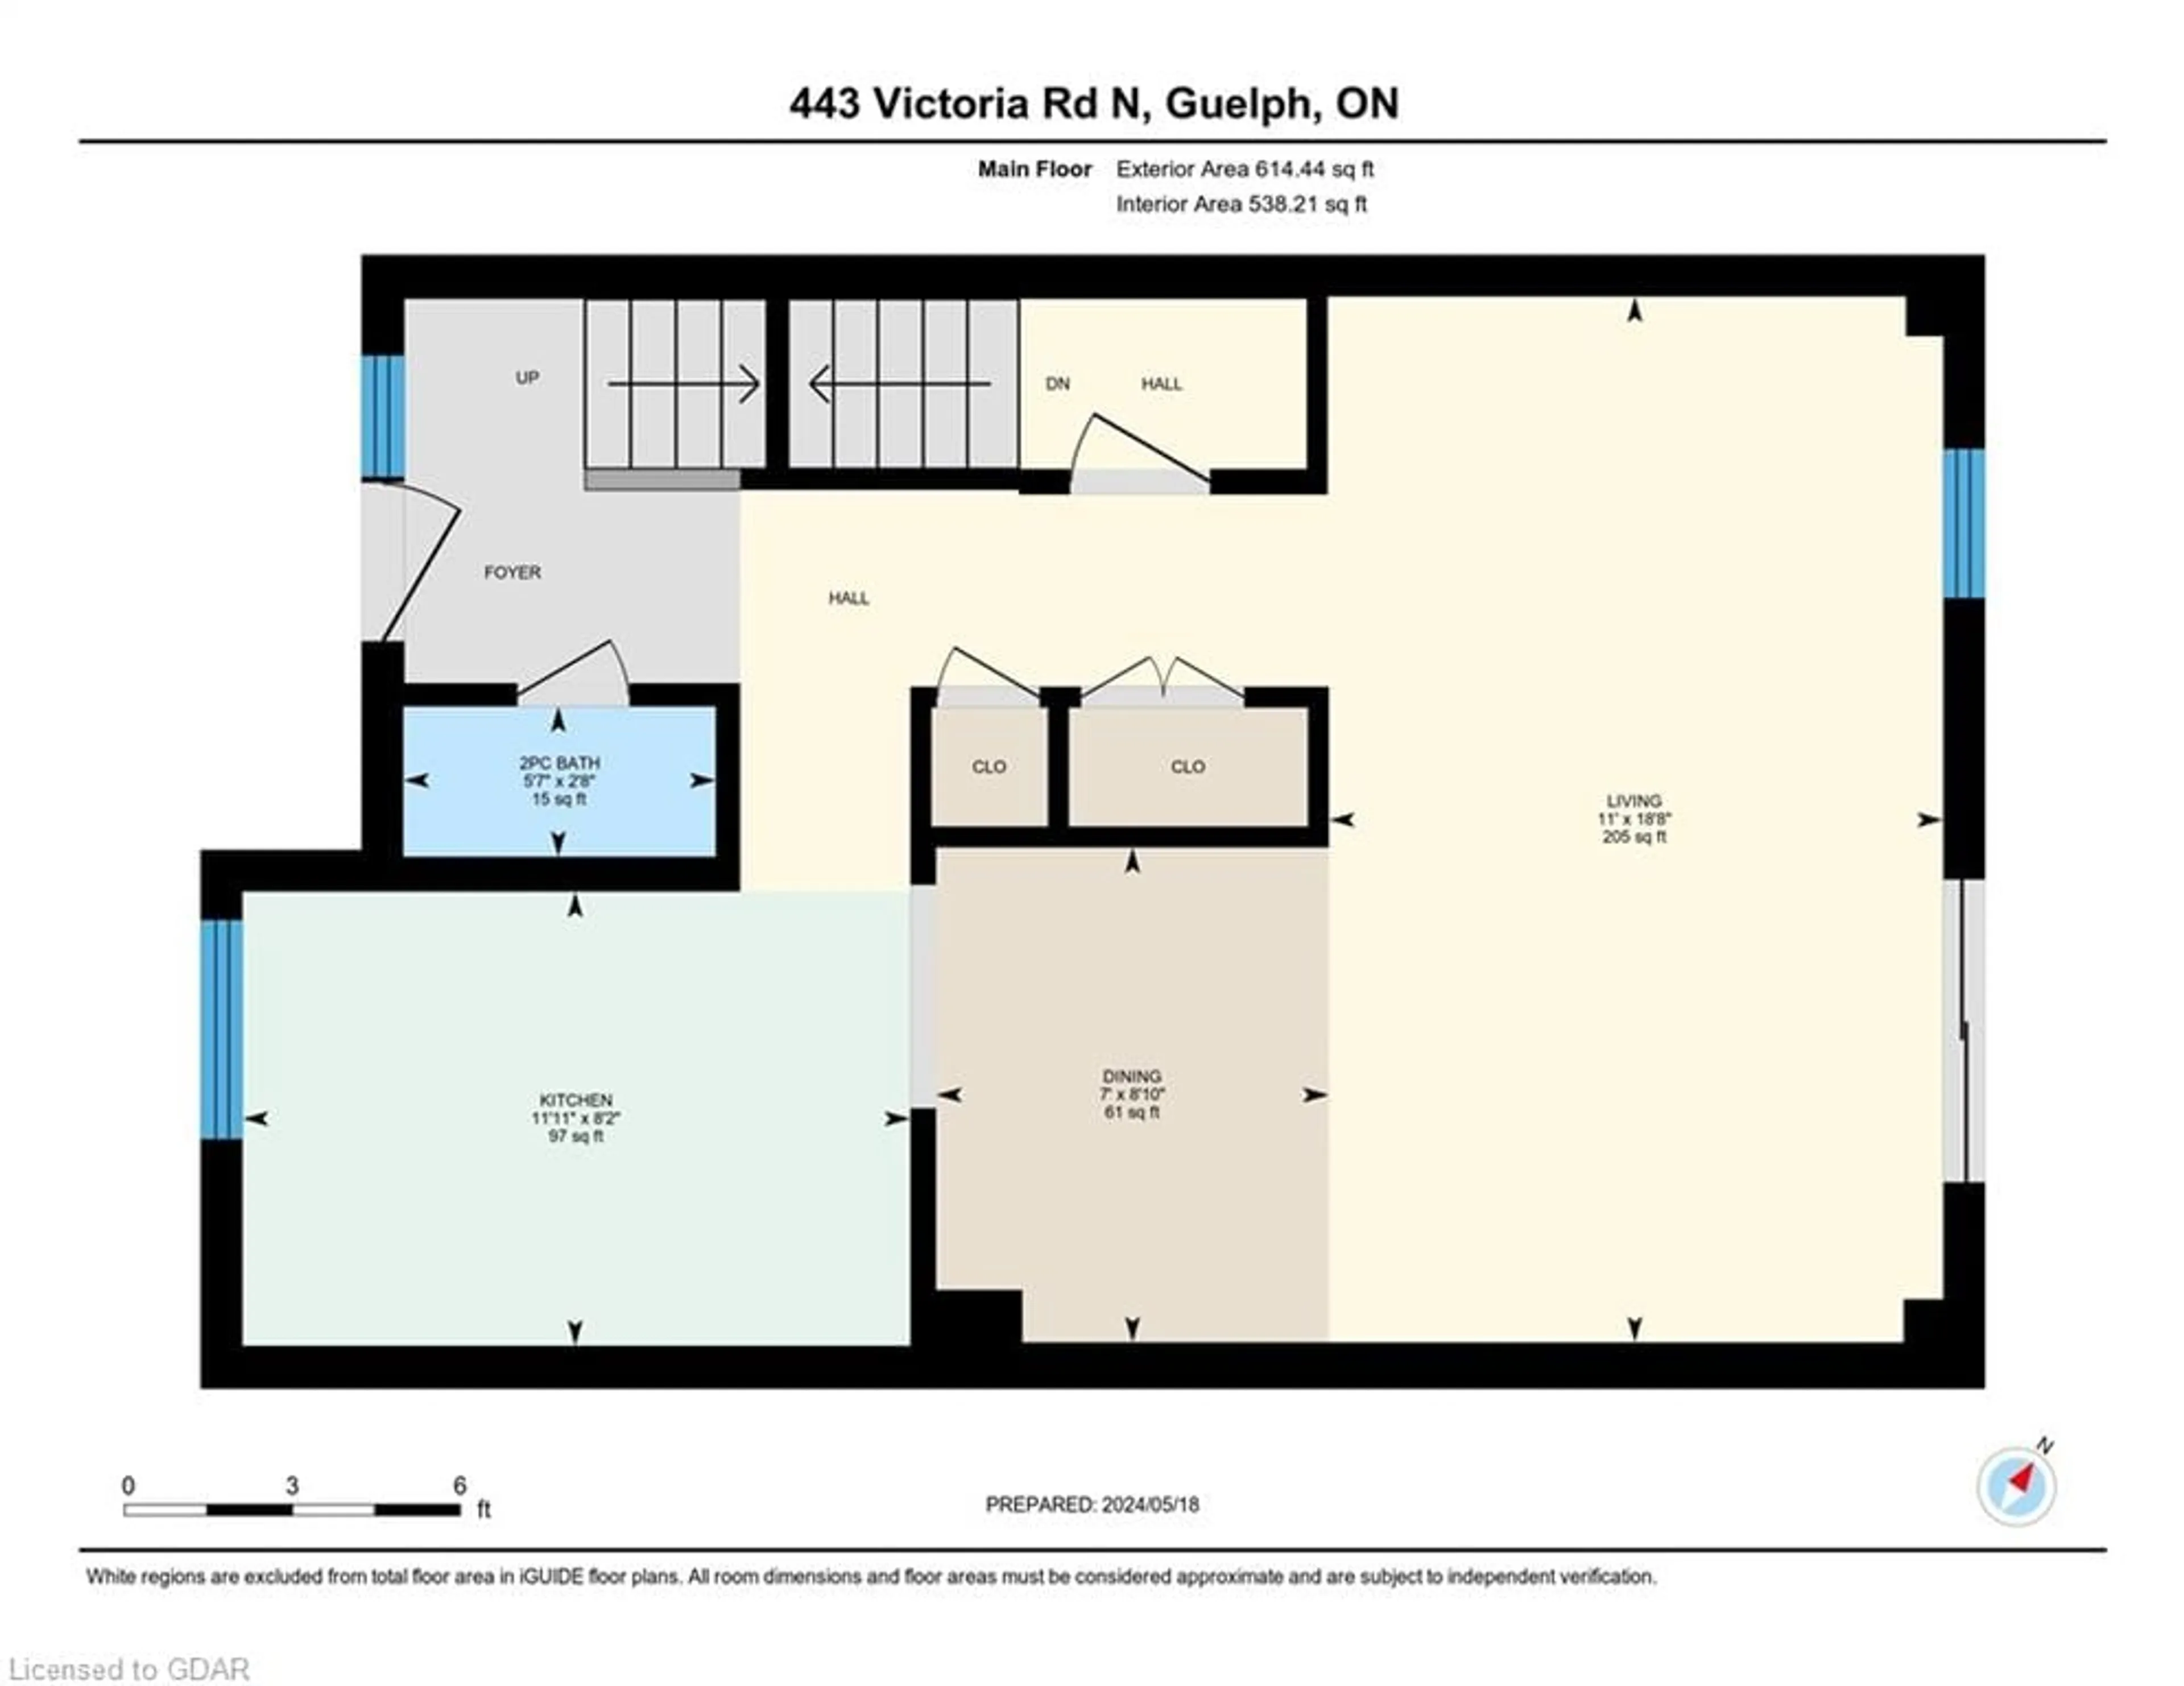 Floor plan for 443 Victoria Rd #60, Guelph Ontario N1E 5S9